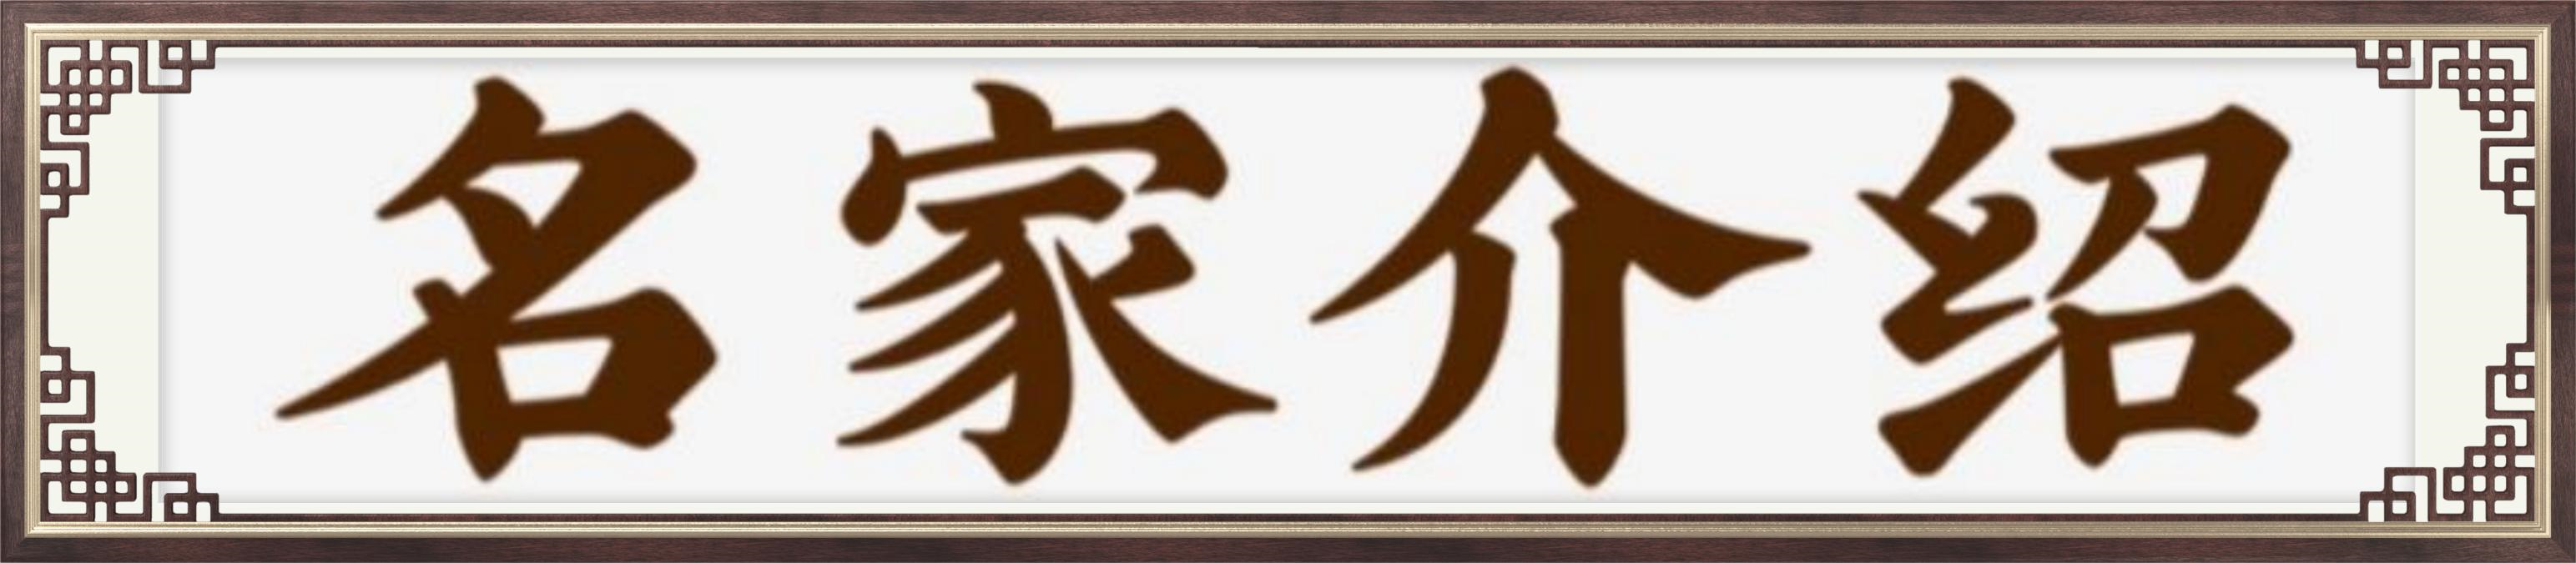 中国艺术传承形象大使司徒惠霞——献礼建军95周年-长治信息巷